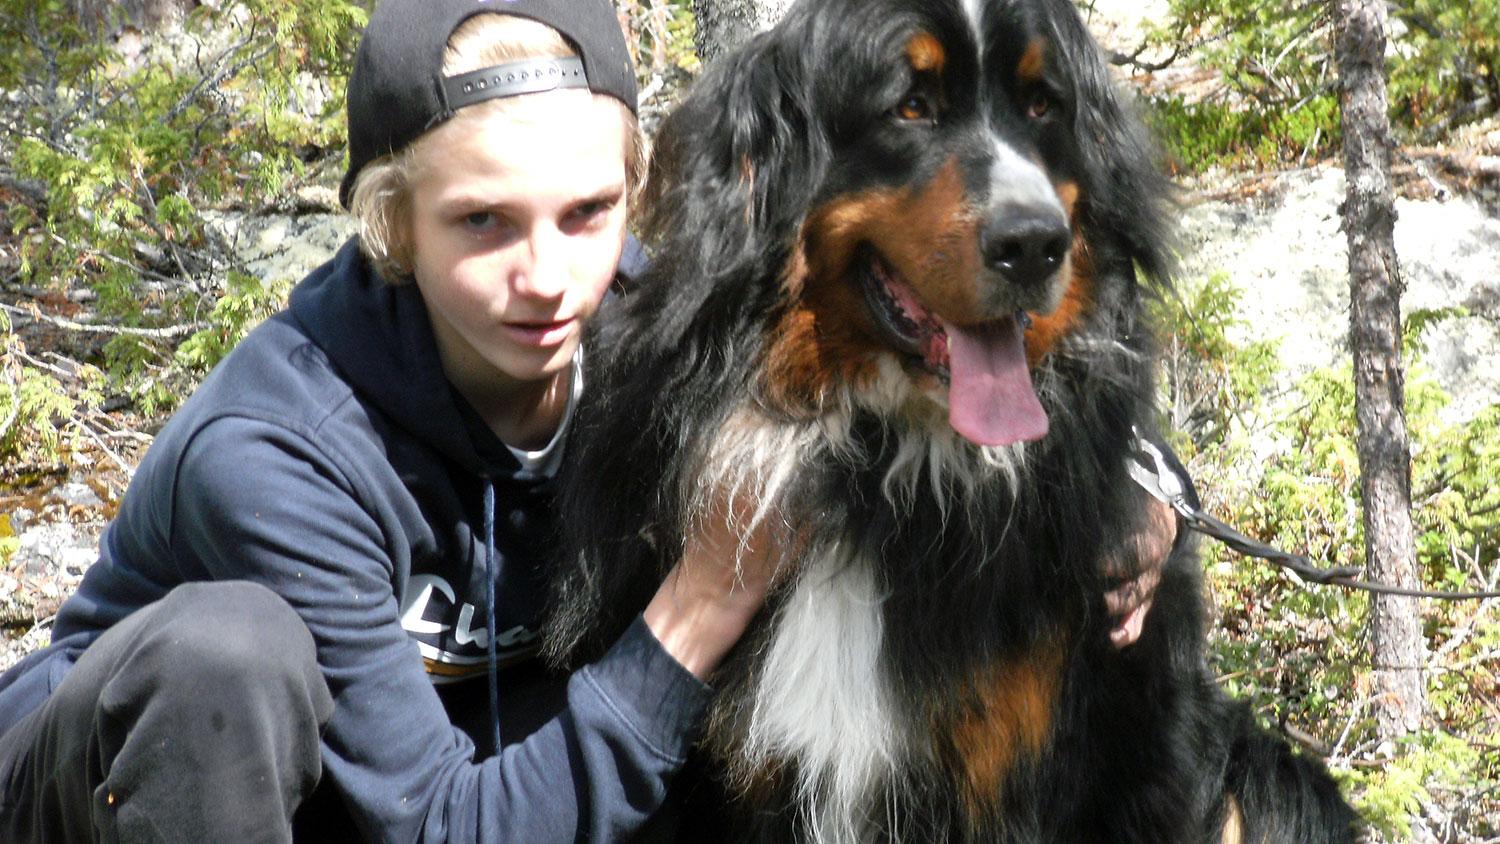 Hugo Edlund beskriver sin barndom som bra. Här är Hugo ungefär 12 år gammal tillsammans med familjemedlemmen Floyd, en Berner sennenhund. ”Han var en stor del av min uppväxt. Floyd dog tyvärr då han fick cancer”, berättar Hugo.